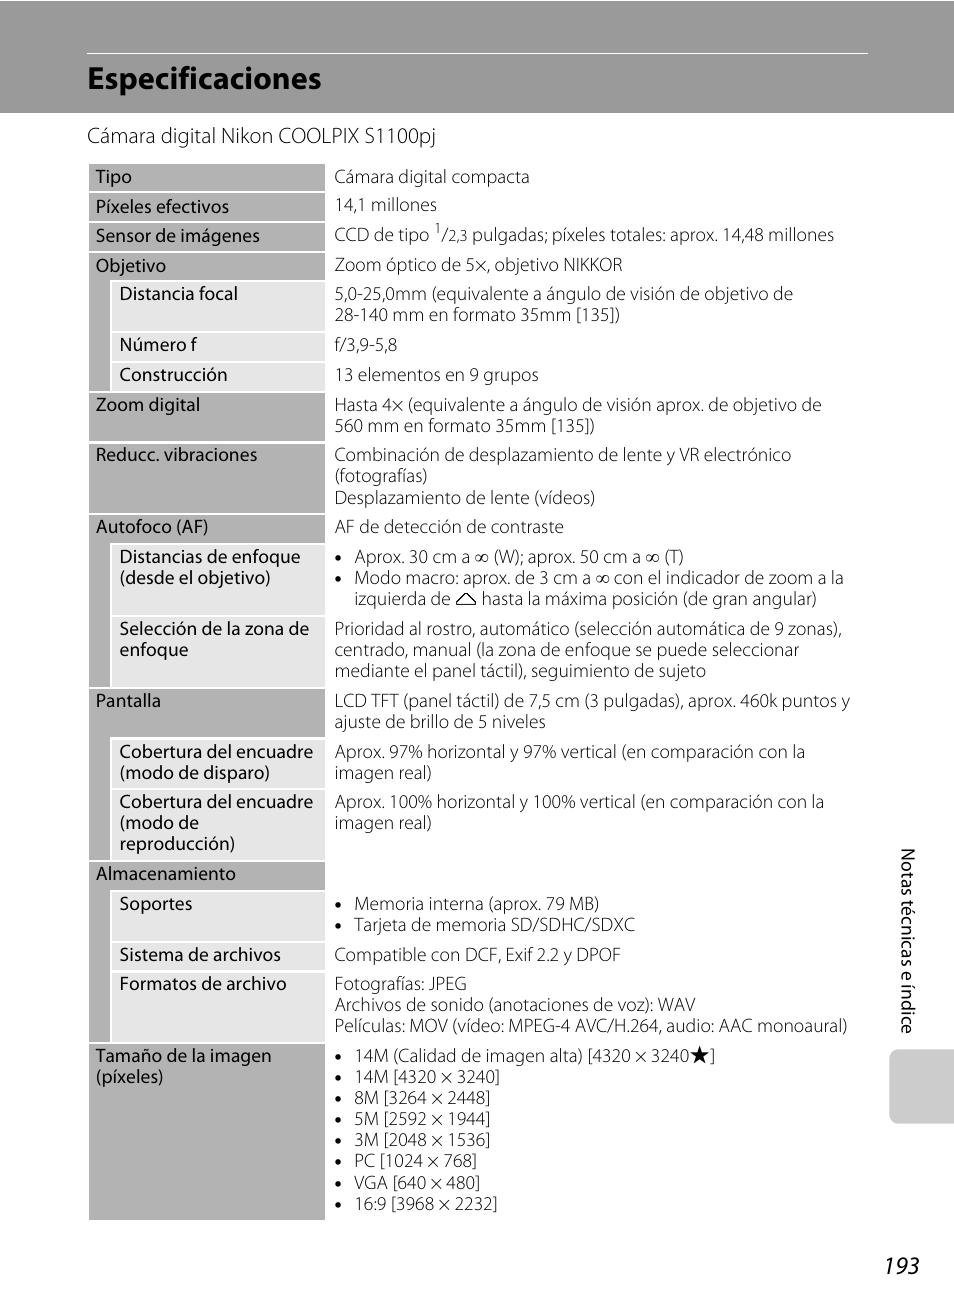 Especificaciones | Nikon Coolpix S1100pj Manual del usuario | Página 207 / 216